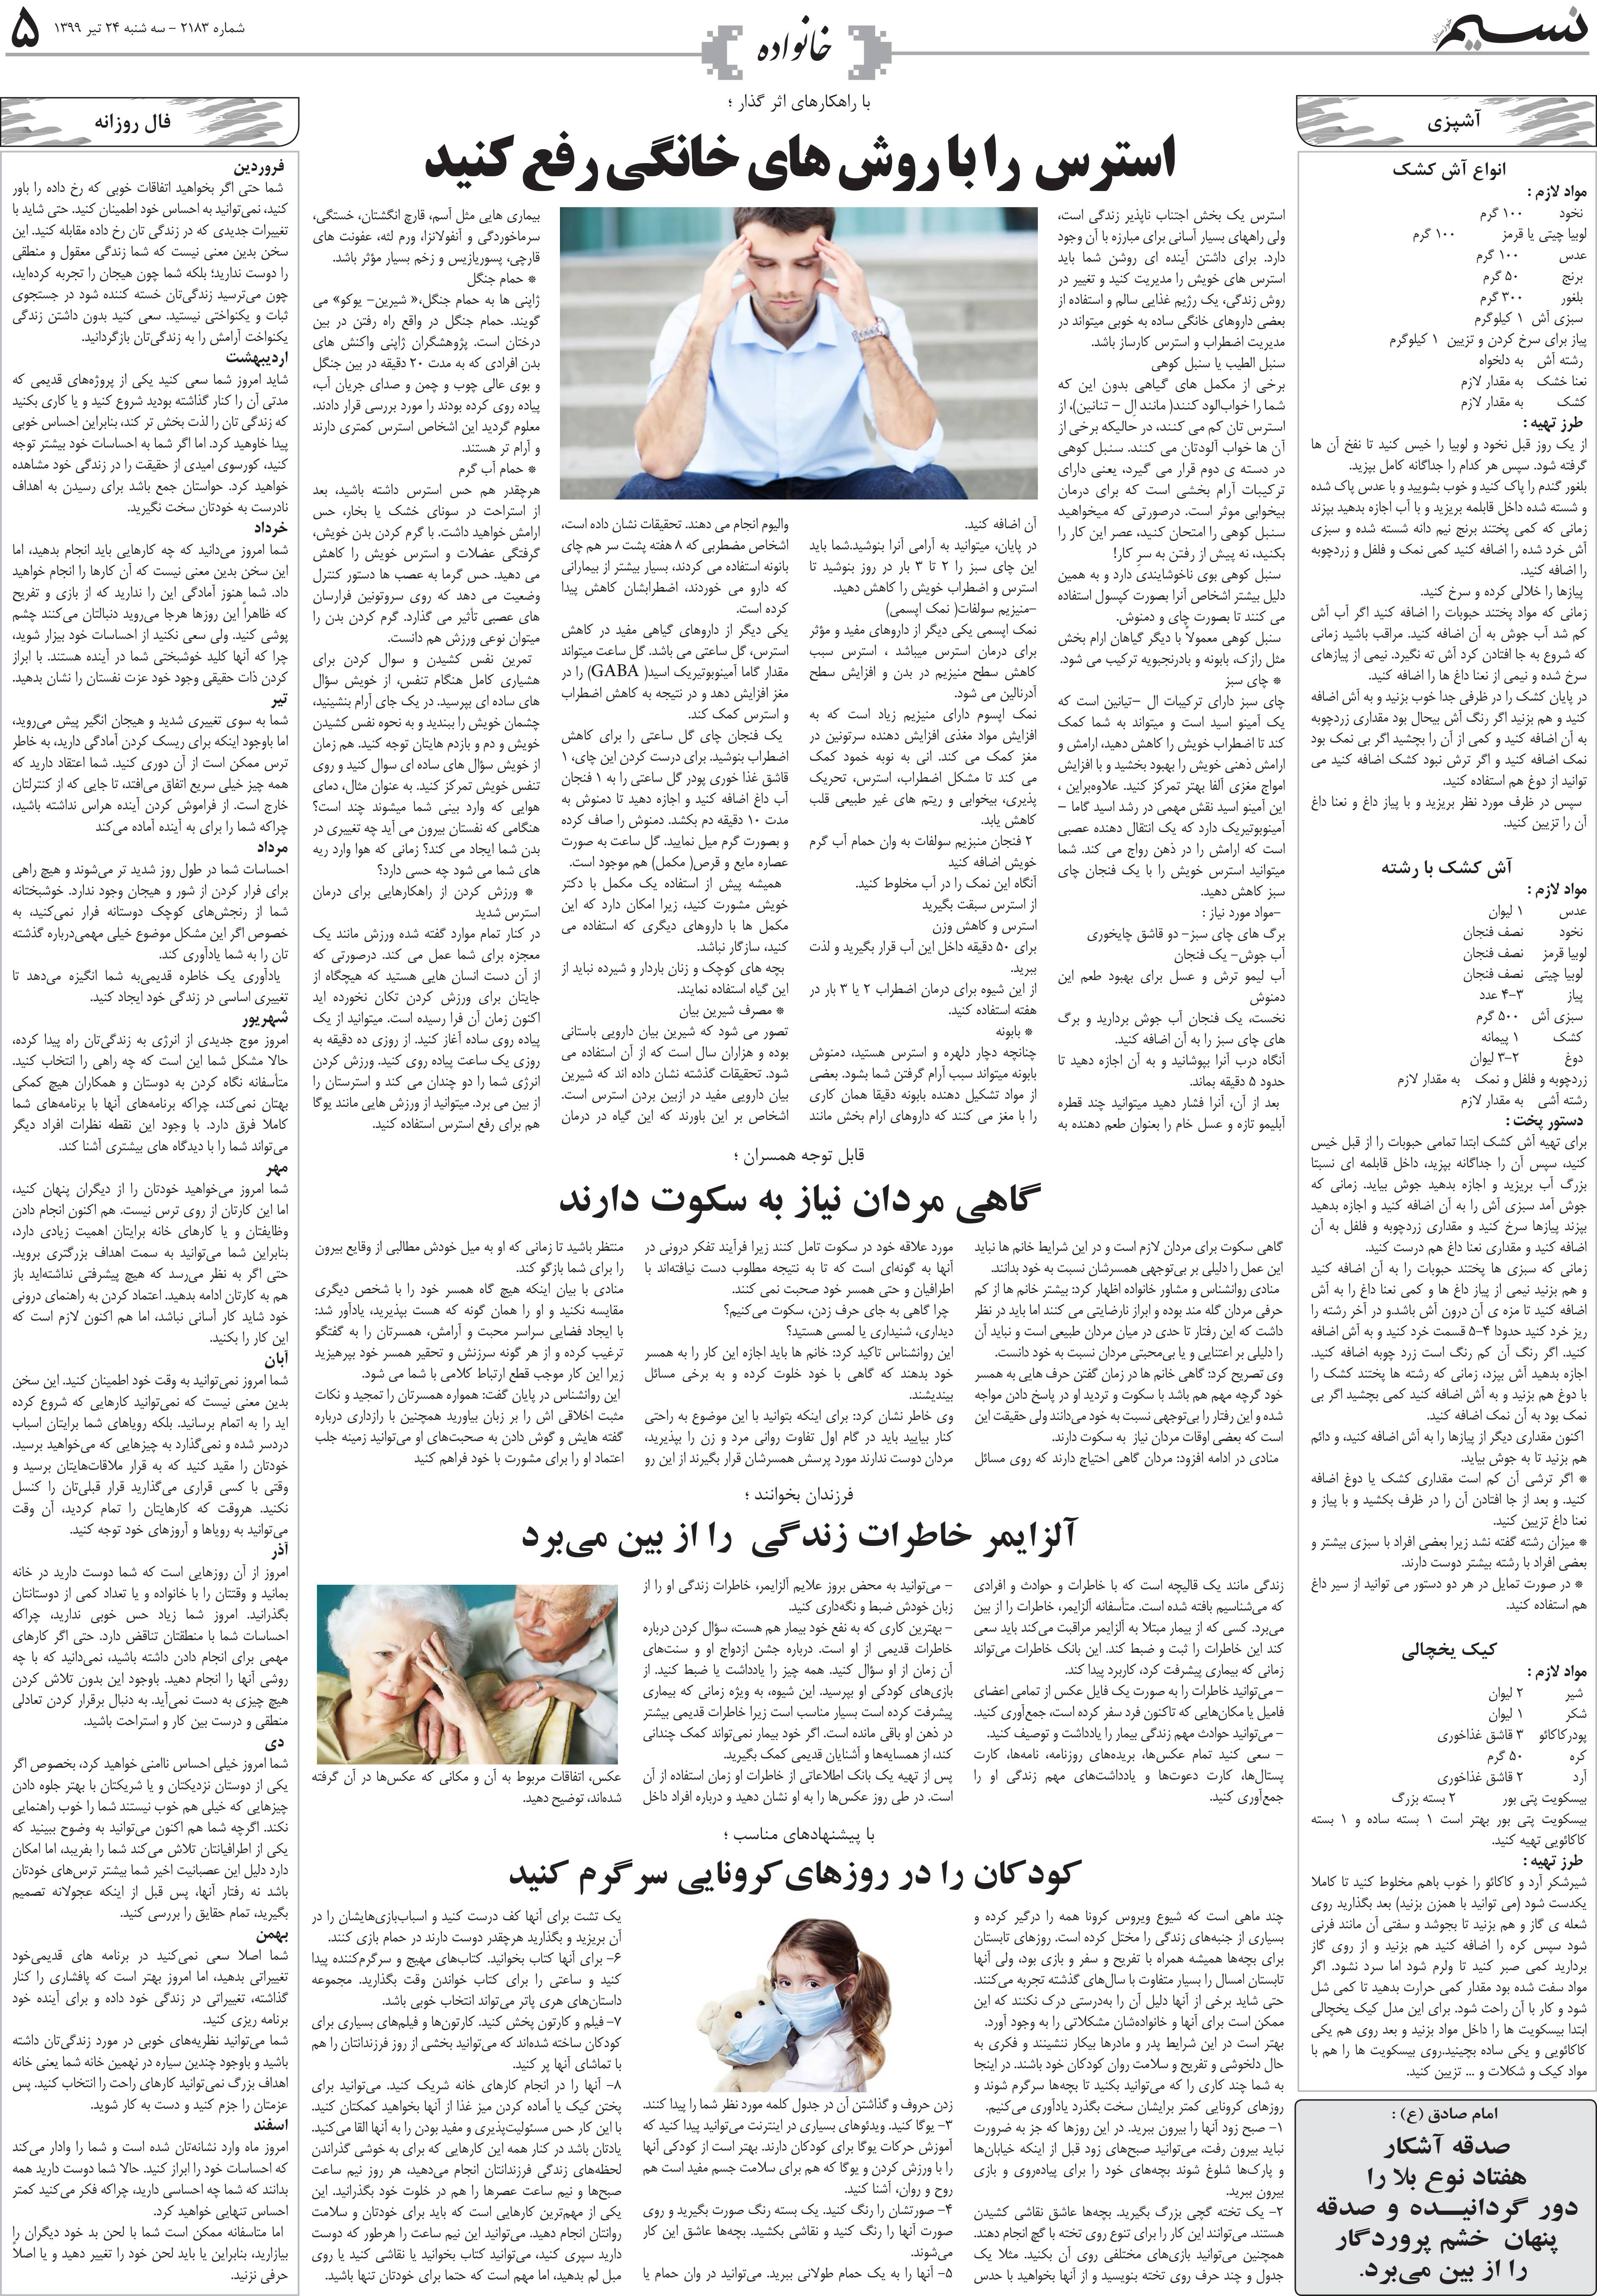 صفحه خانواده روزنامه نسیم شماره 2183